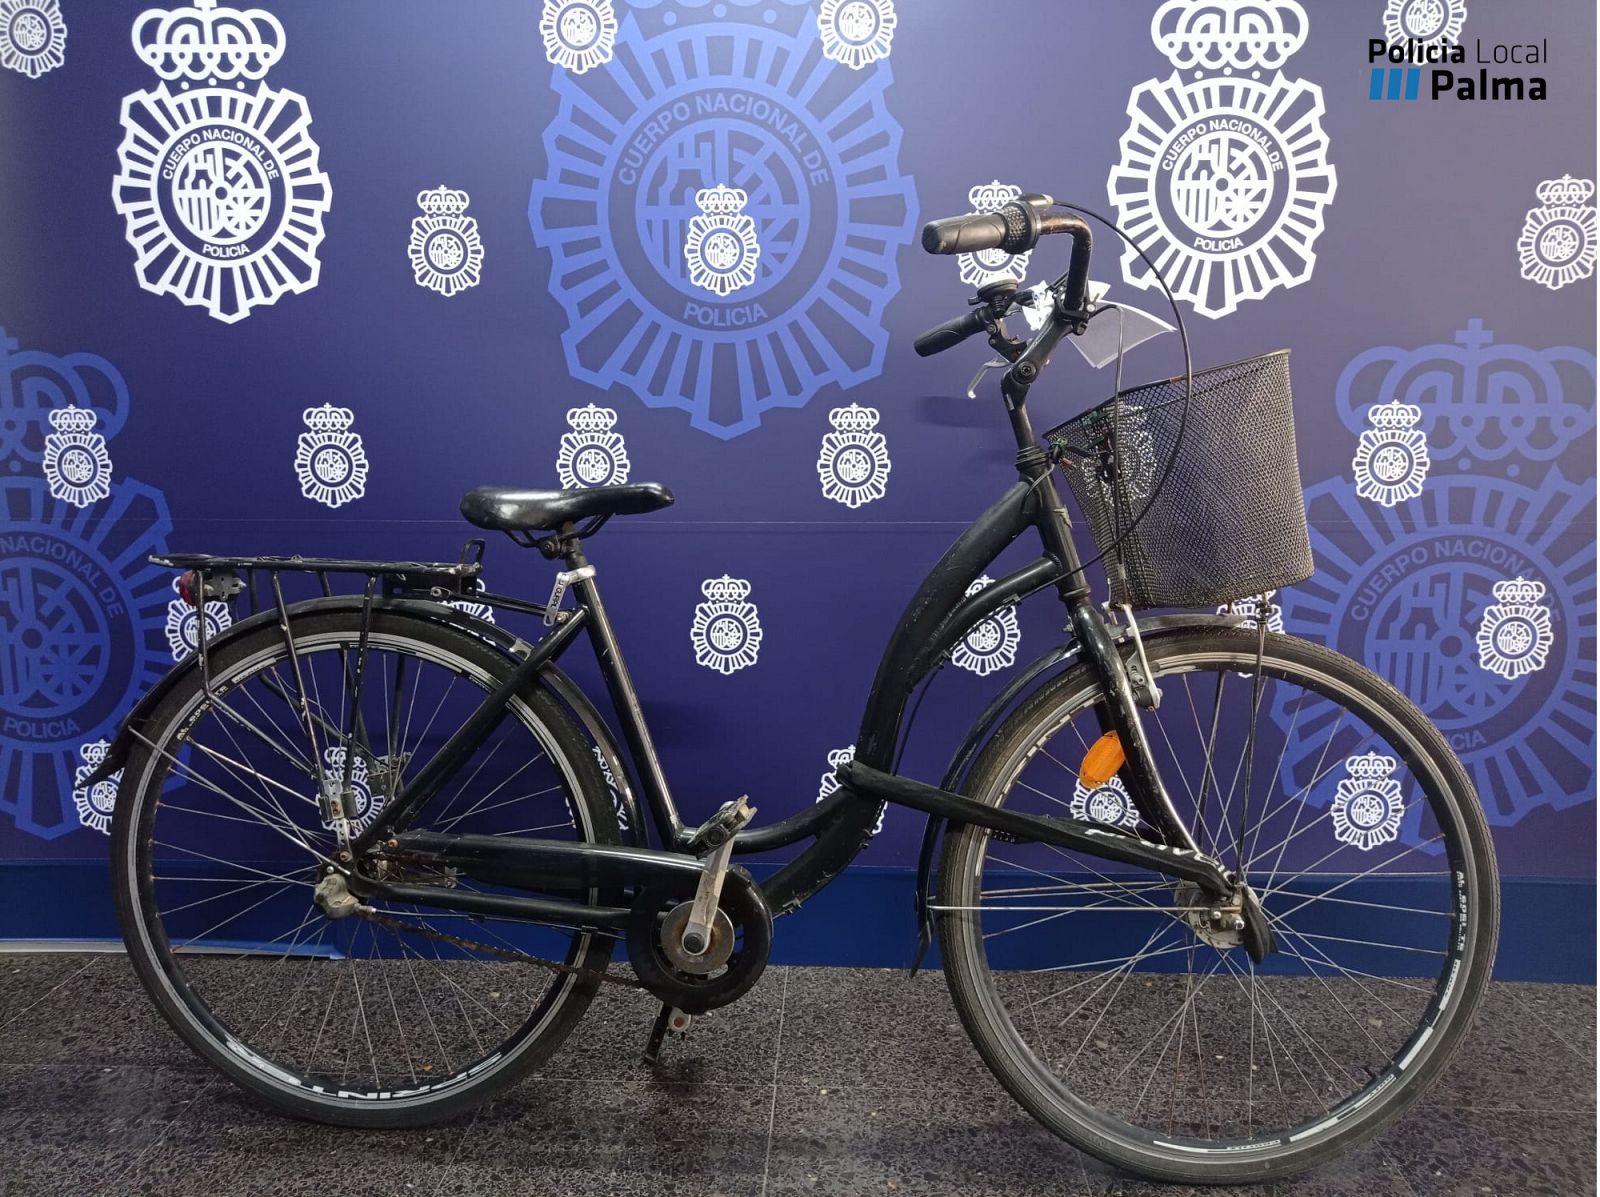 La Policia va recuperar una bicicleta